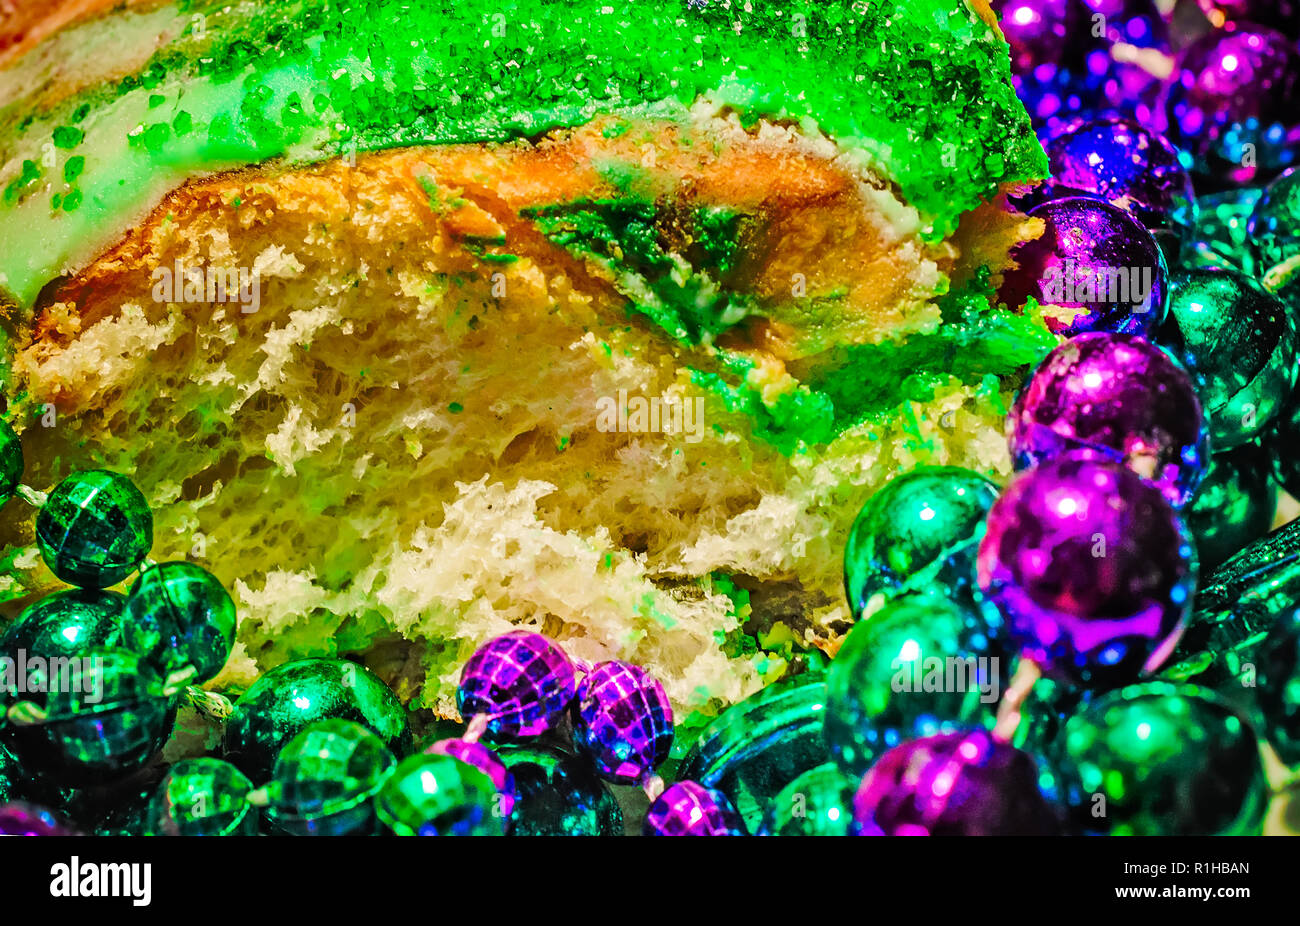 Eine Mardi Gras König Kuchen ist dargestellt mit violetten und grünen Mardi Gras Perlen, 12. März 2014 in Mobile, Alabama. Der König Kuchen ist traditionell aus Stockfoto